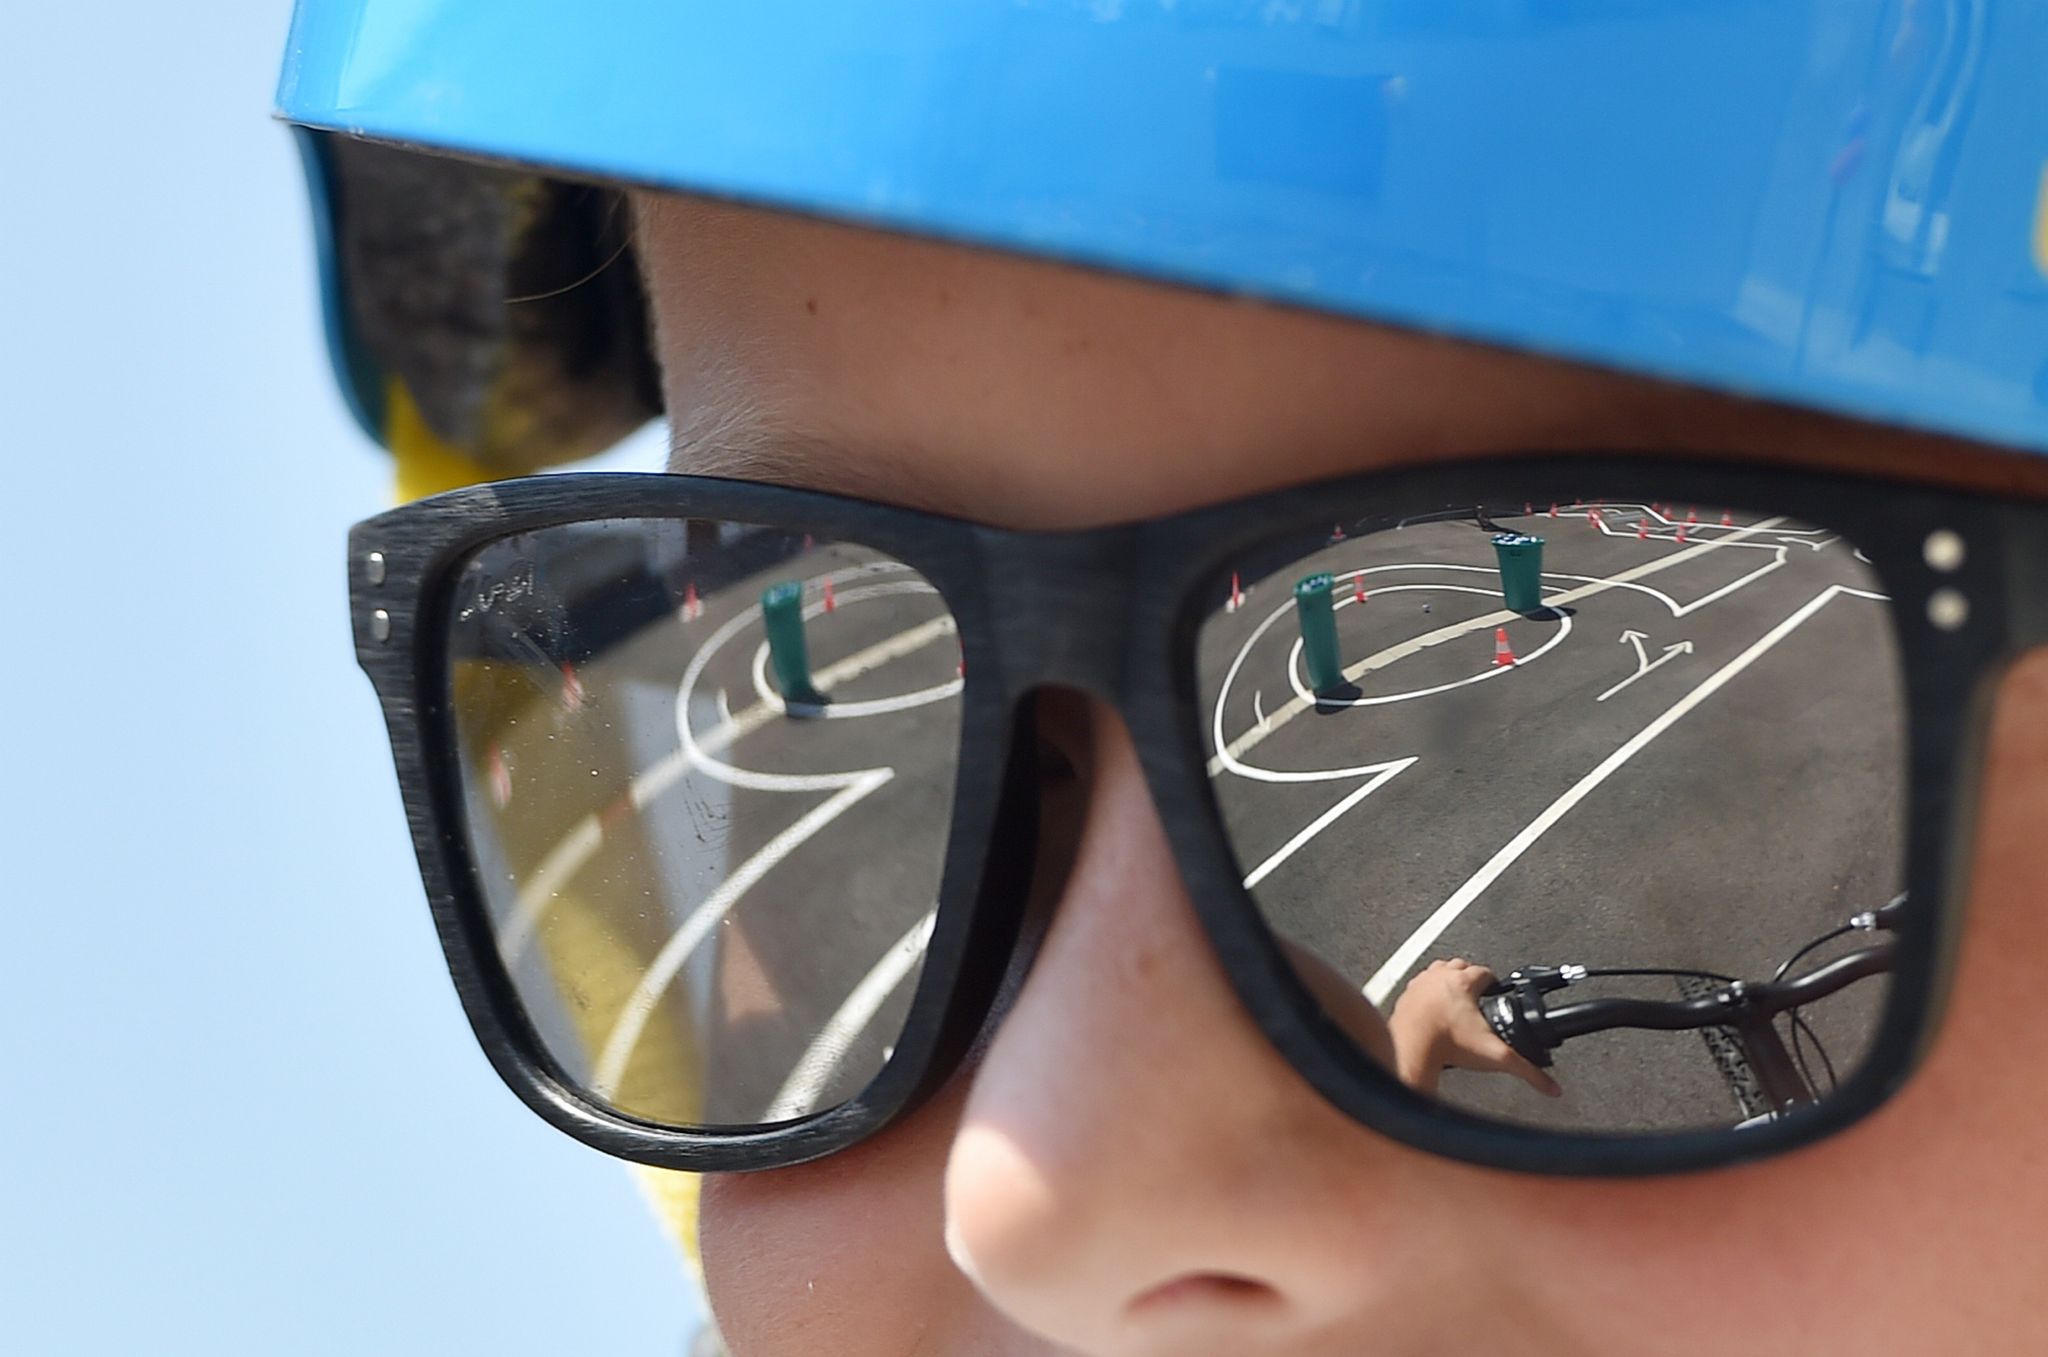 Sonnenschutz für Kinderaugen ist unerlässlich: Sonnenbrille und Sonnencreme sollten ständige Begleiter sein.